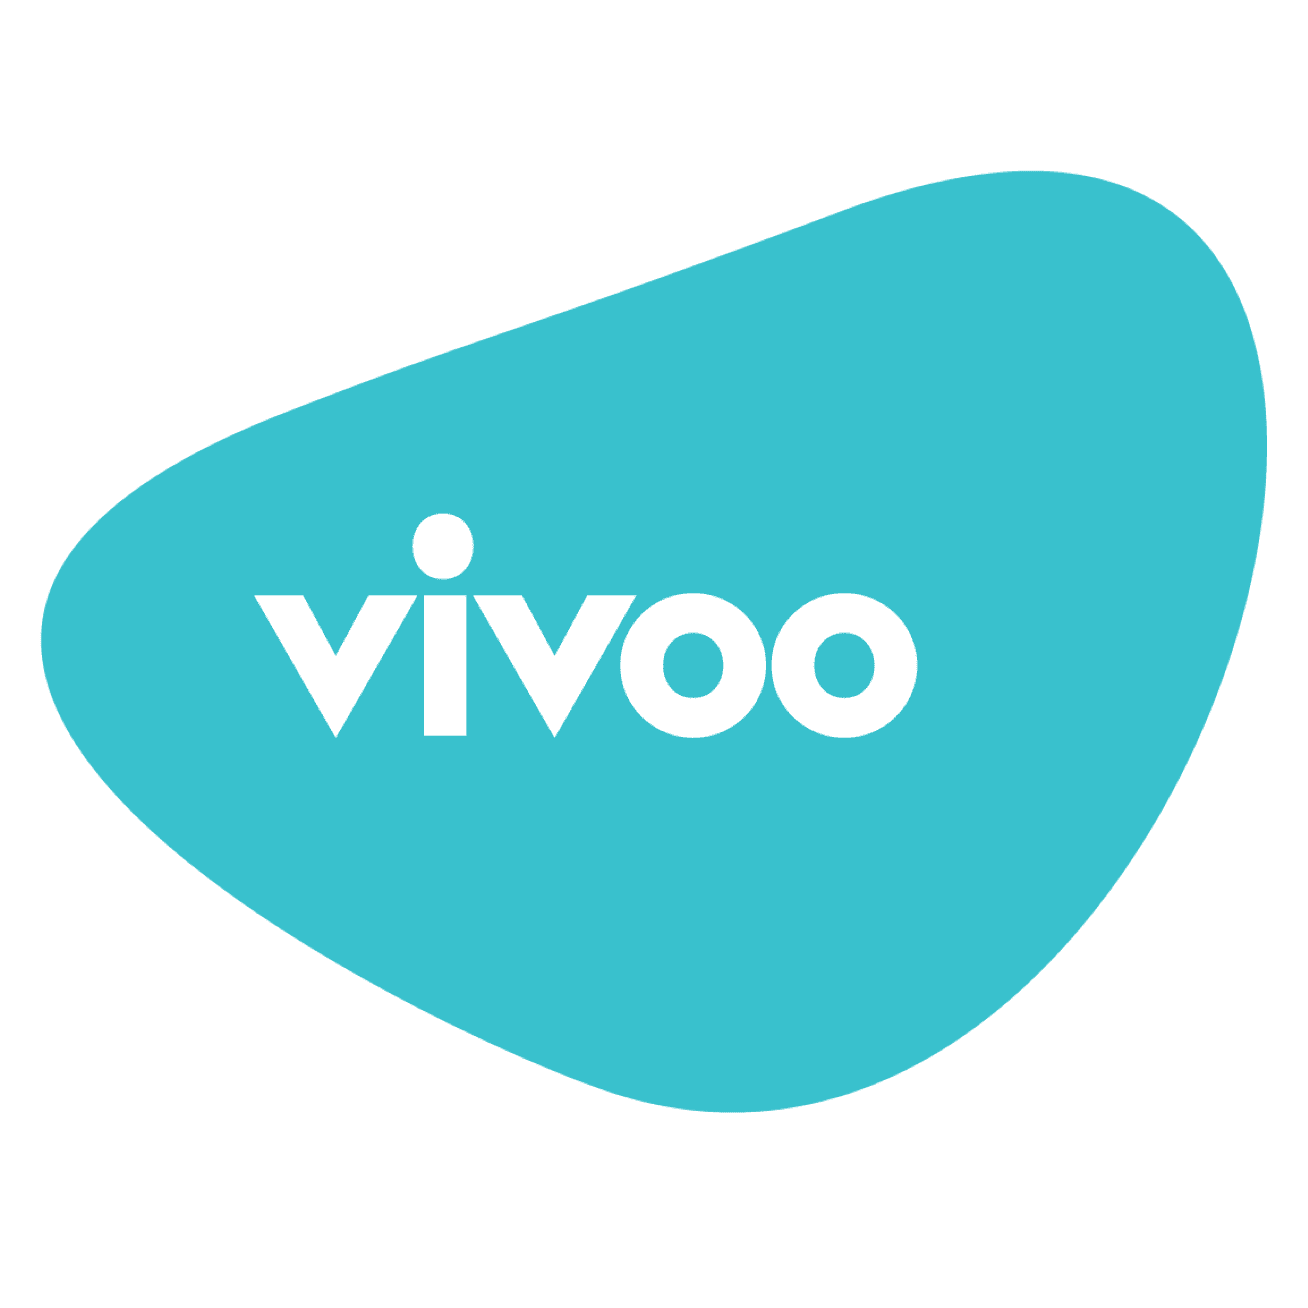 Vivoo - Crunchbase Company Profile & Funding